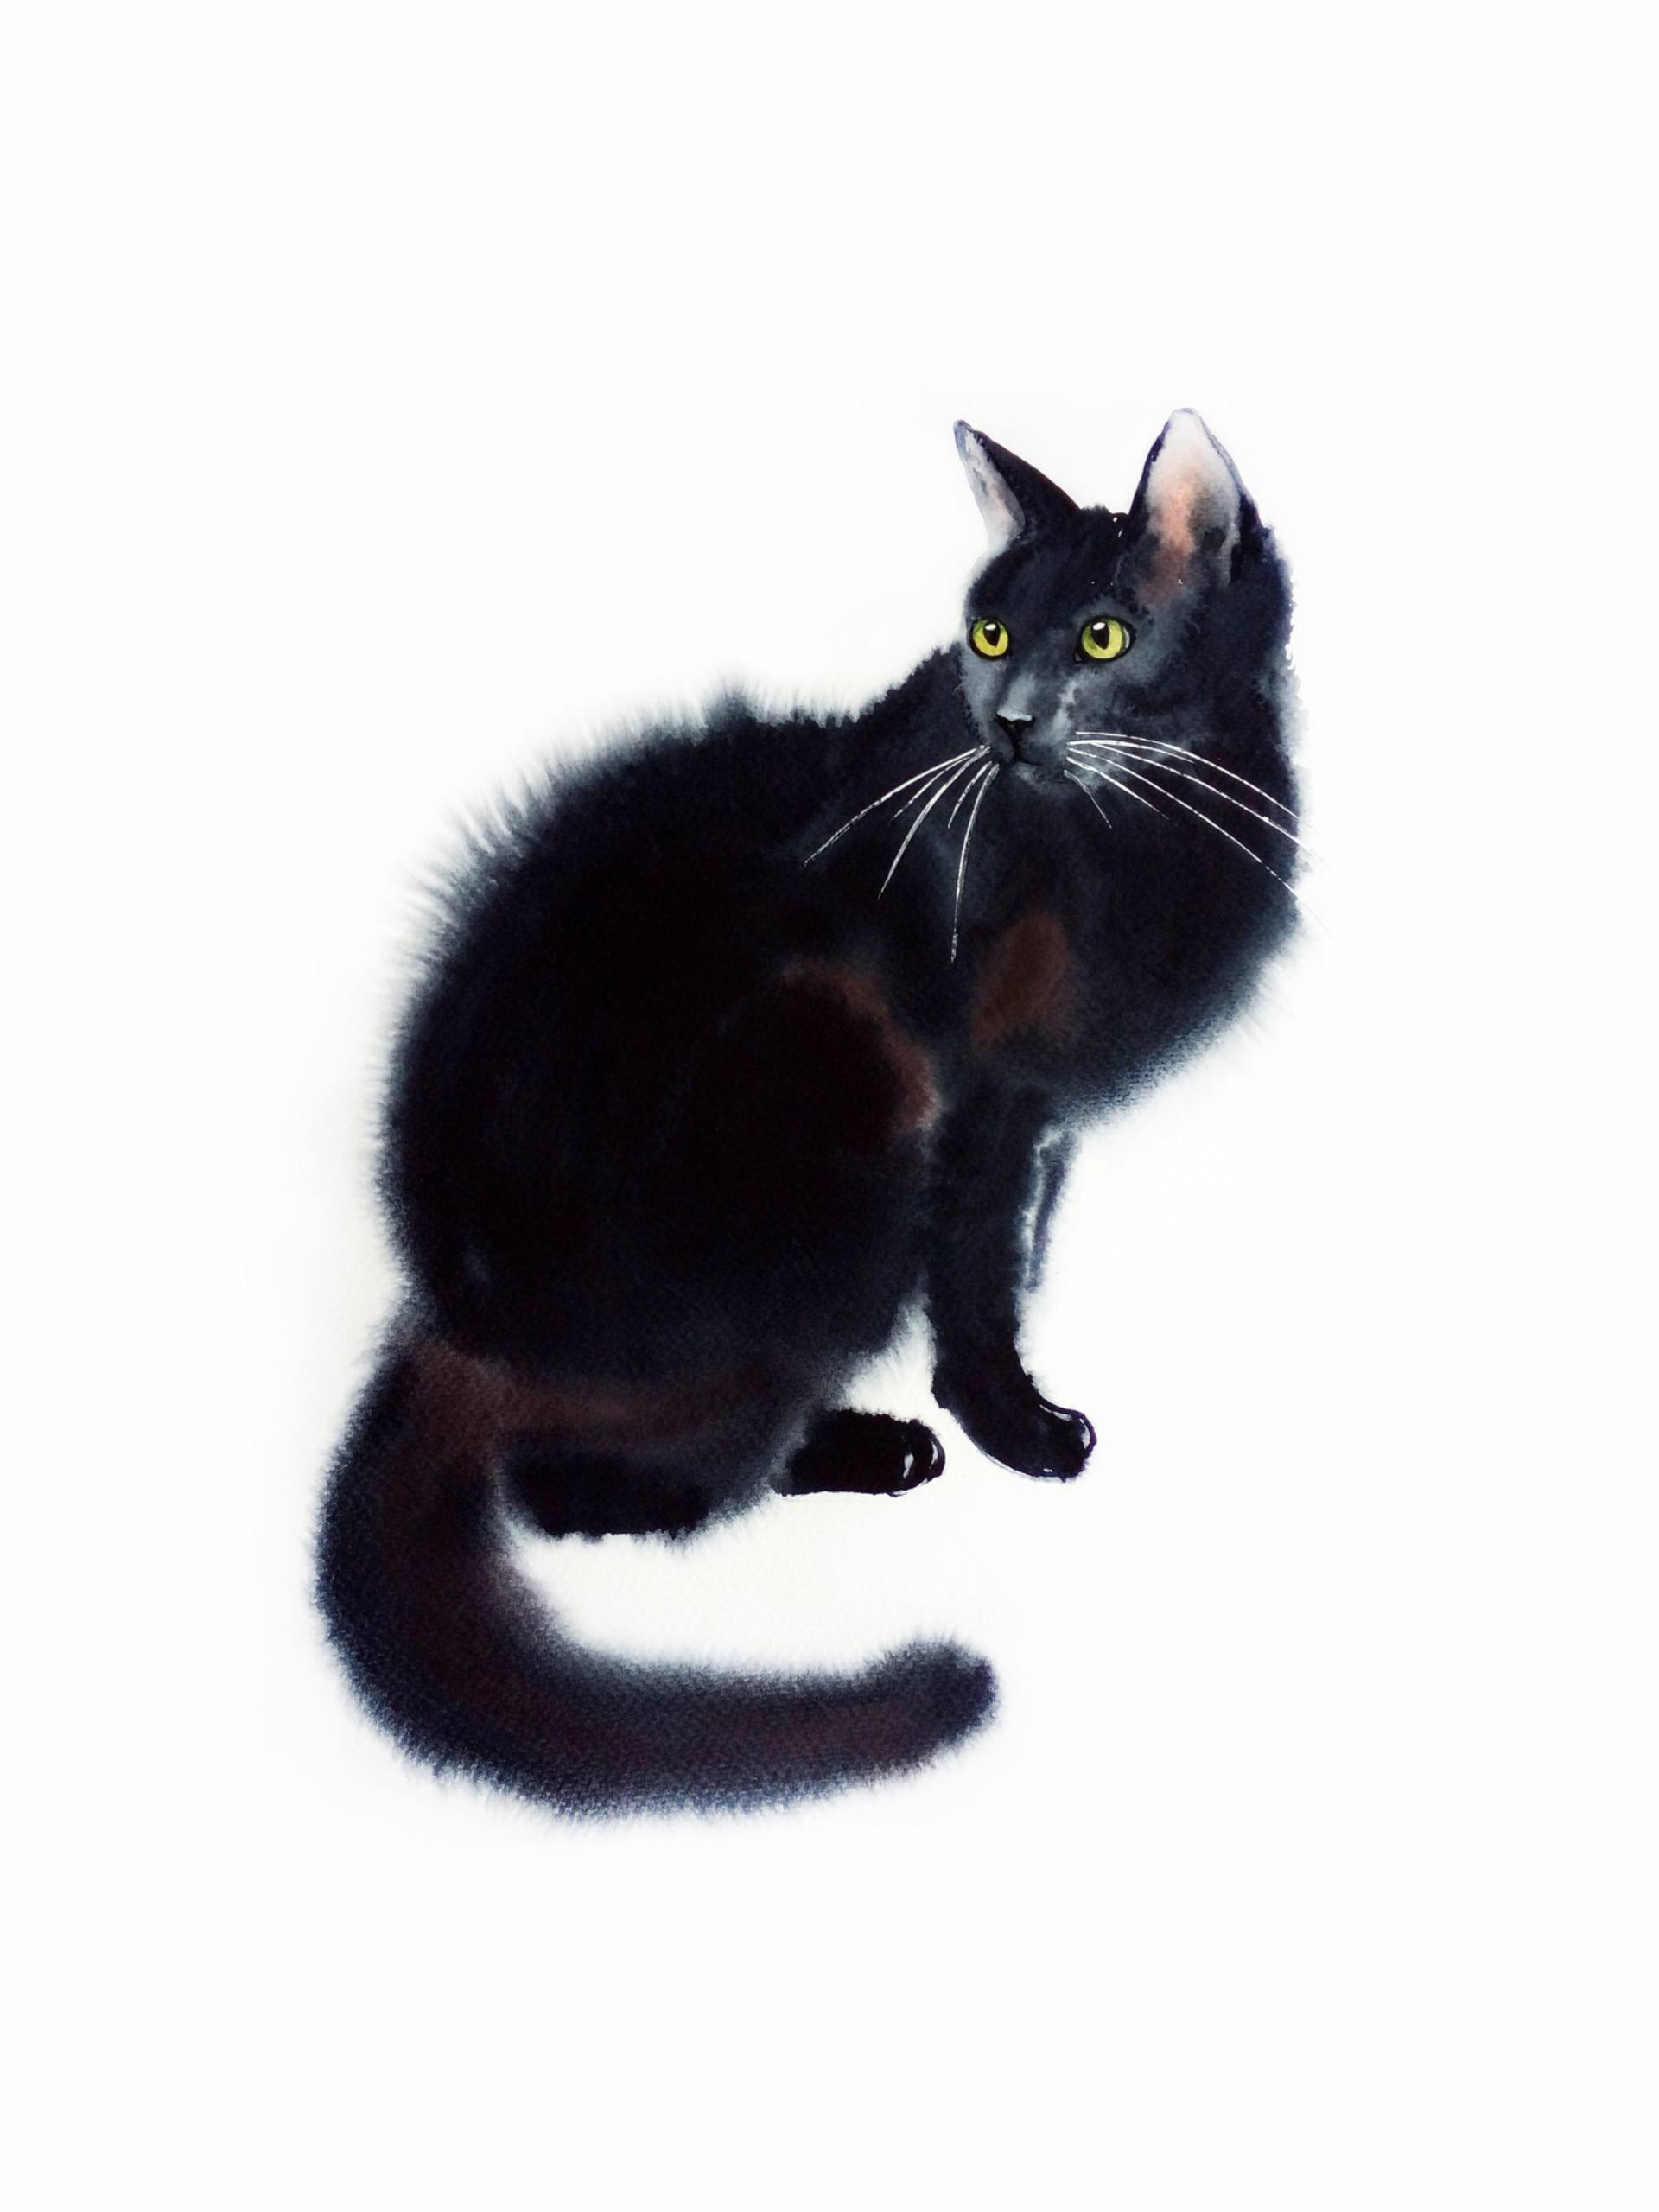 Saatchi Art: Black cat - black cat portrait - watercolor Painting by ...